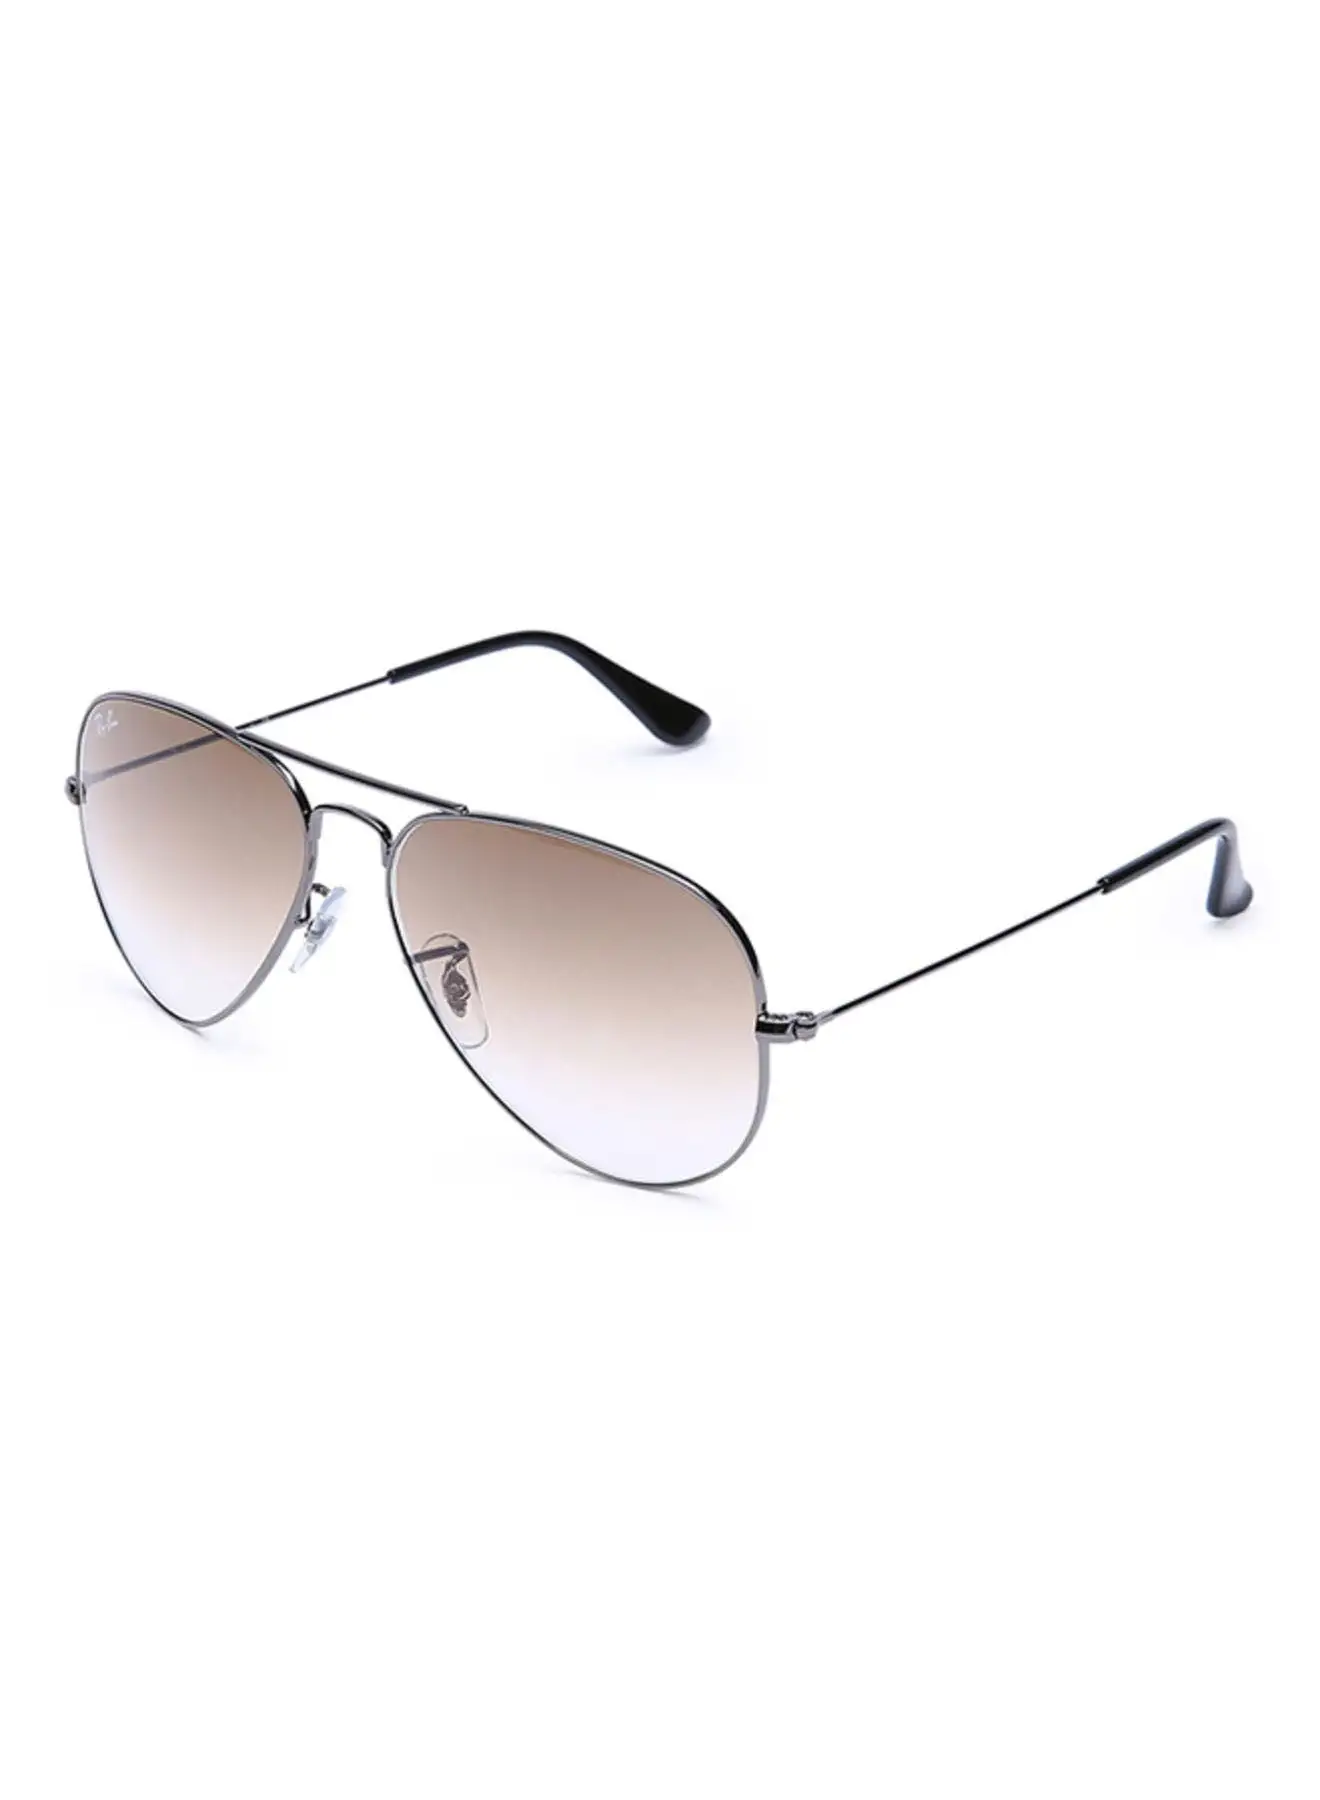 Ray-Ban Men's Full Rim Aviator Sunglasses - RB3025 004/51 - Lens Size: 58 mm - Grey